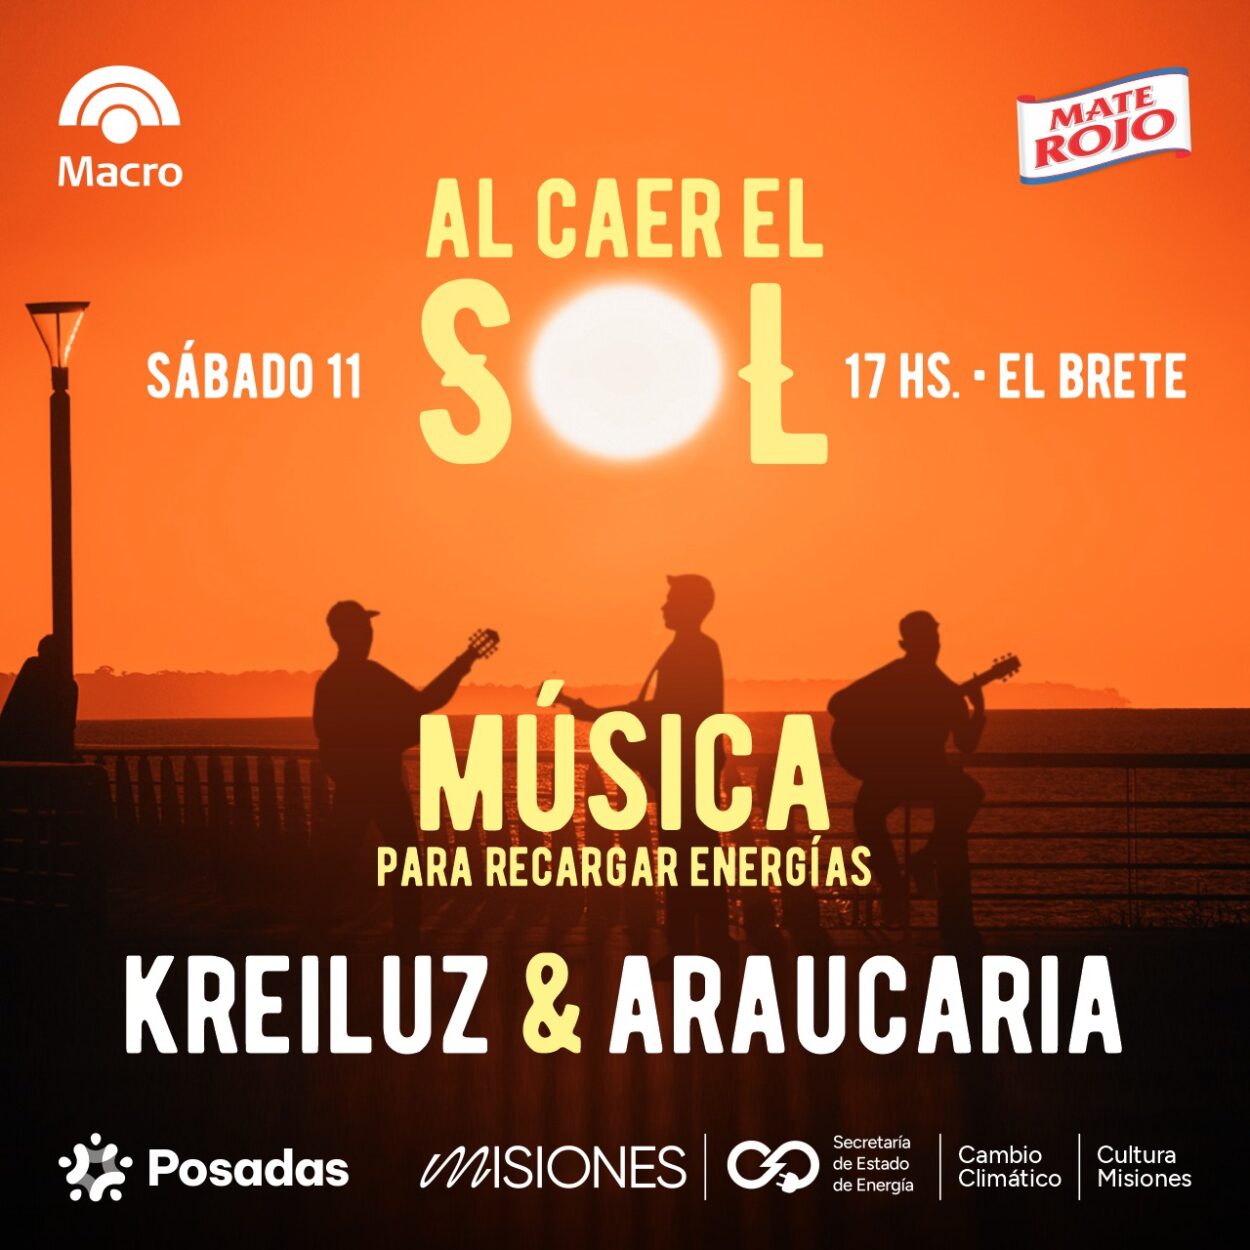 Araucaria y Kreiluz aportarán su energía musical este sábado en El Brete imagen-7